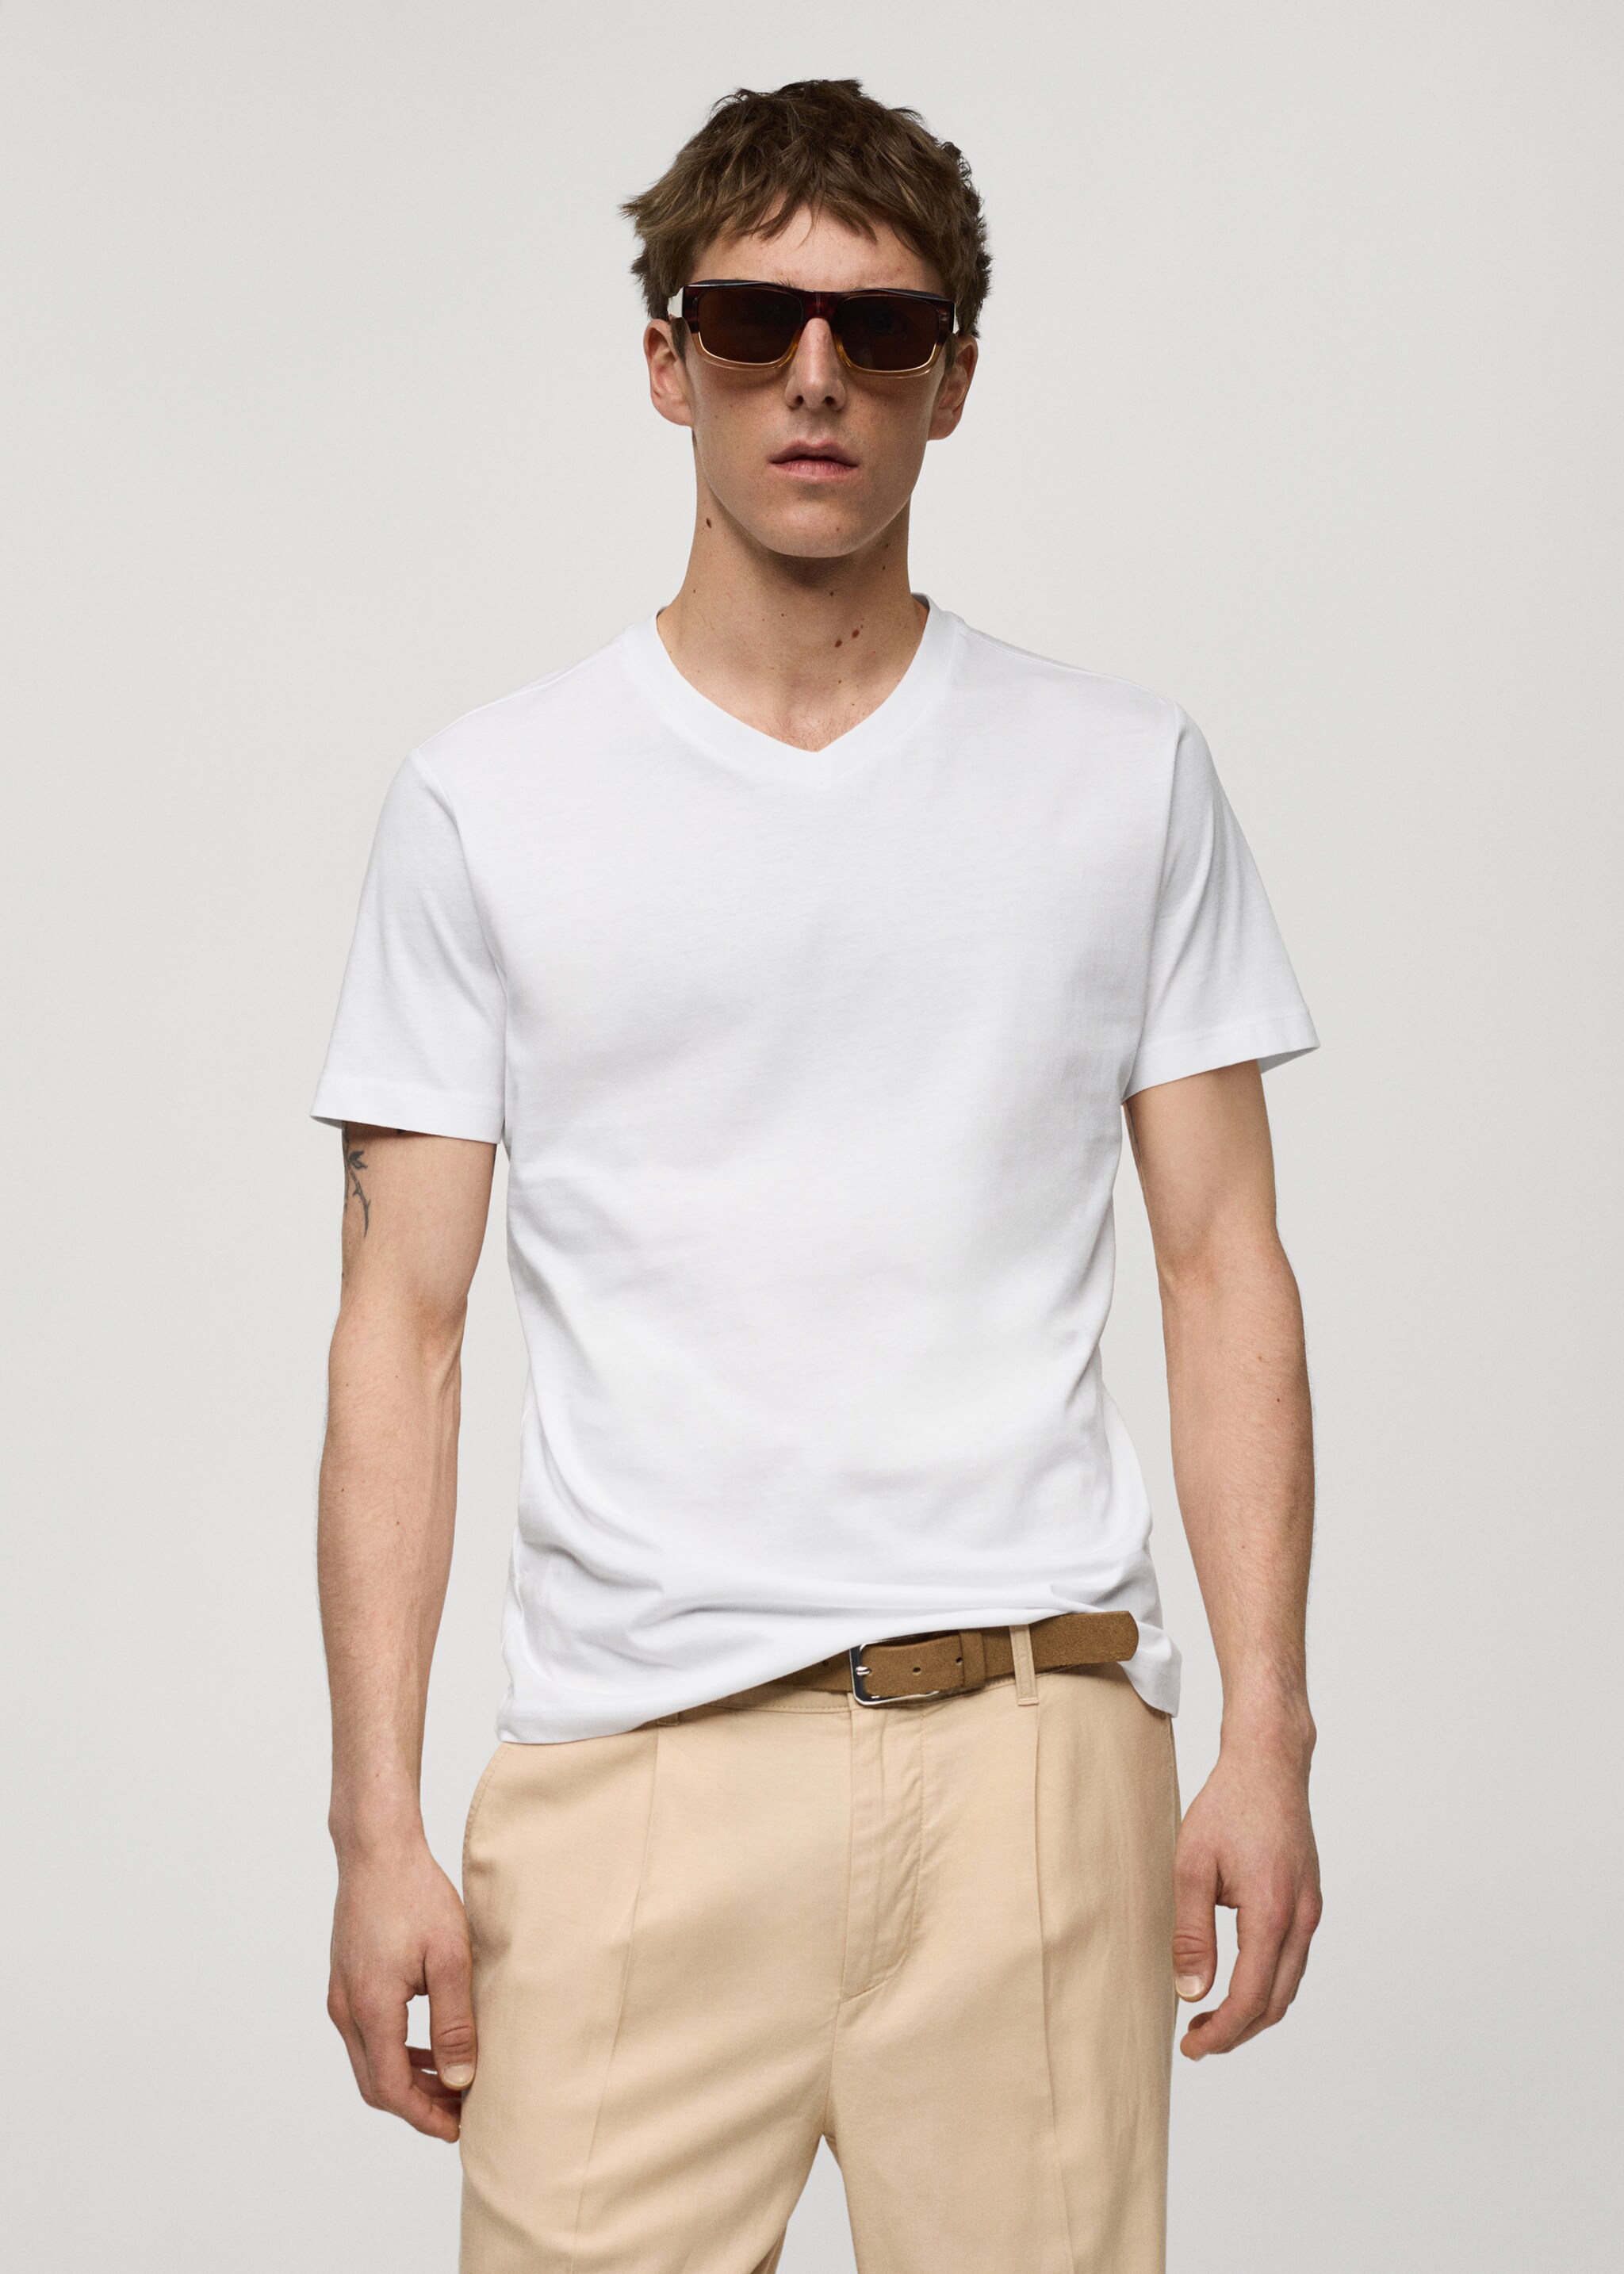 Camiseta slim fit algodón cuello pico - Plano medio